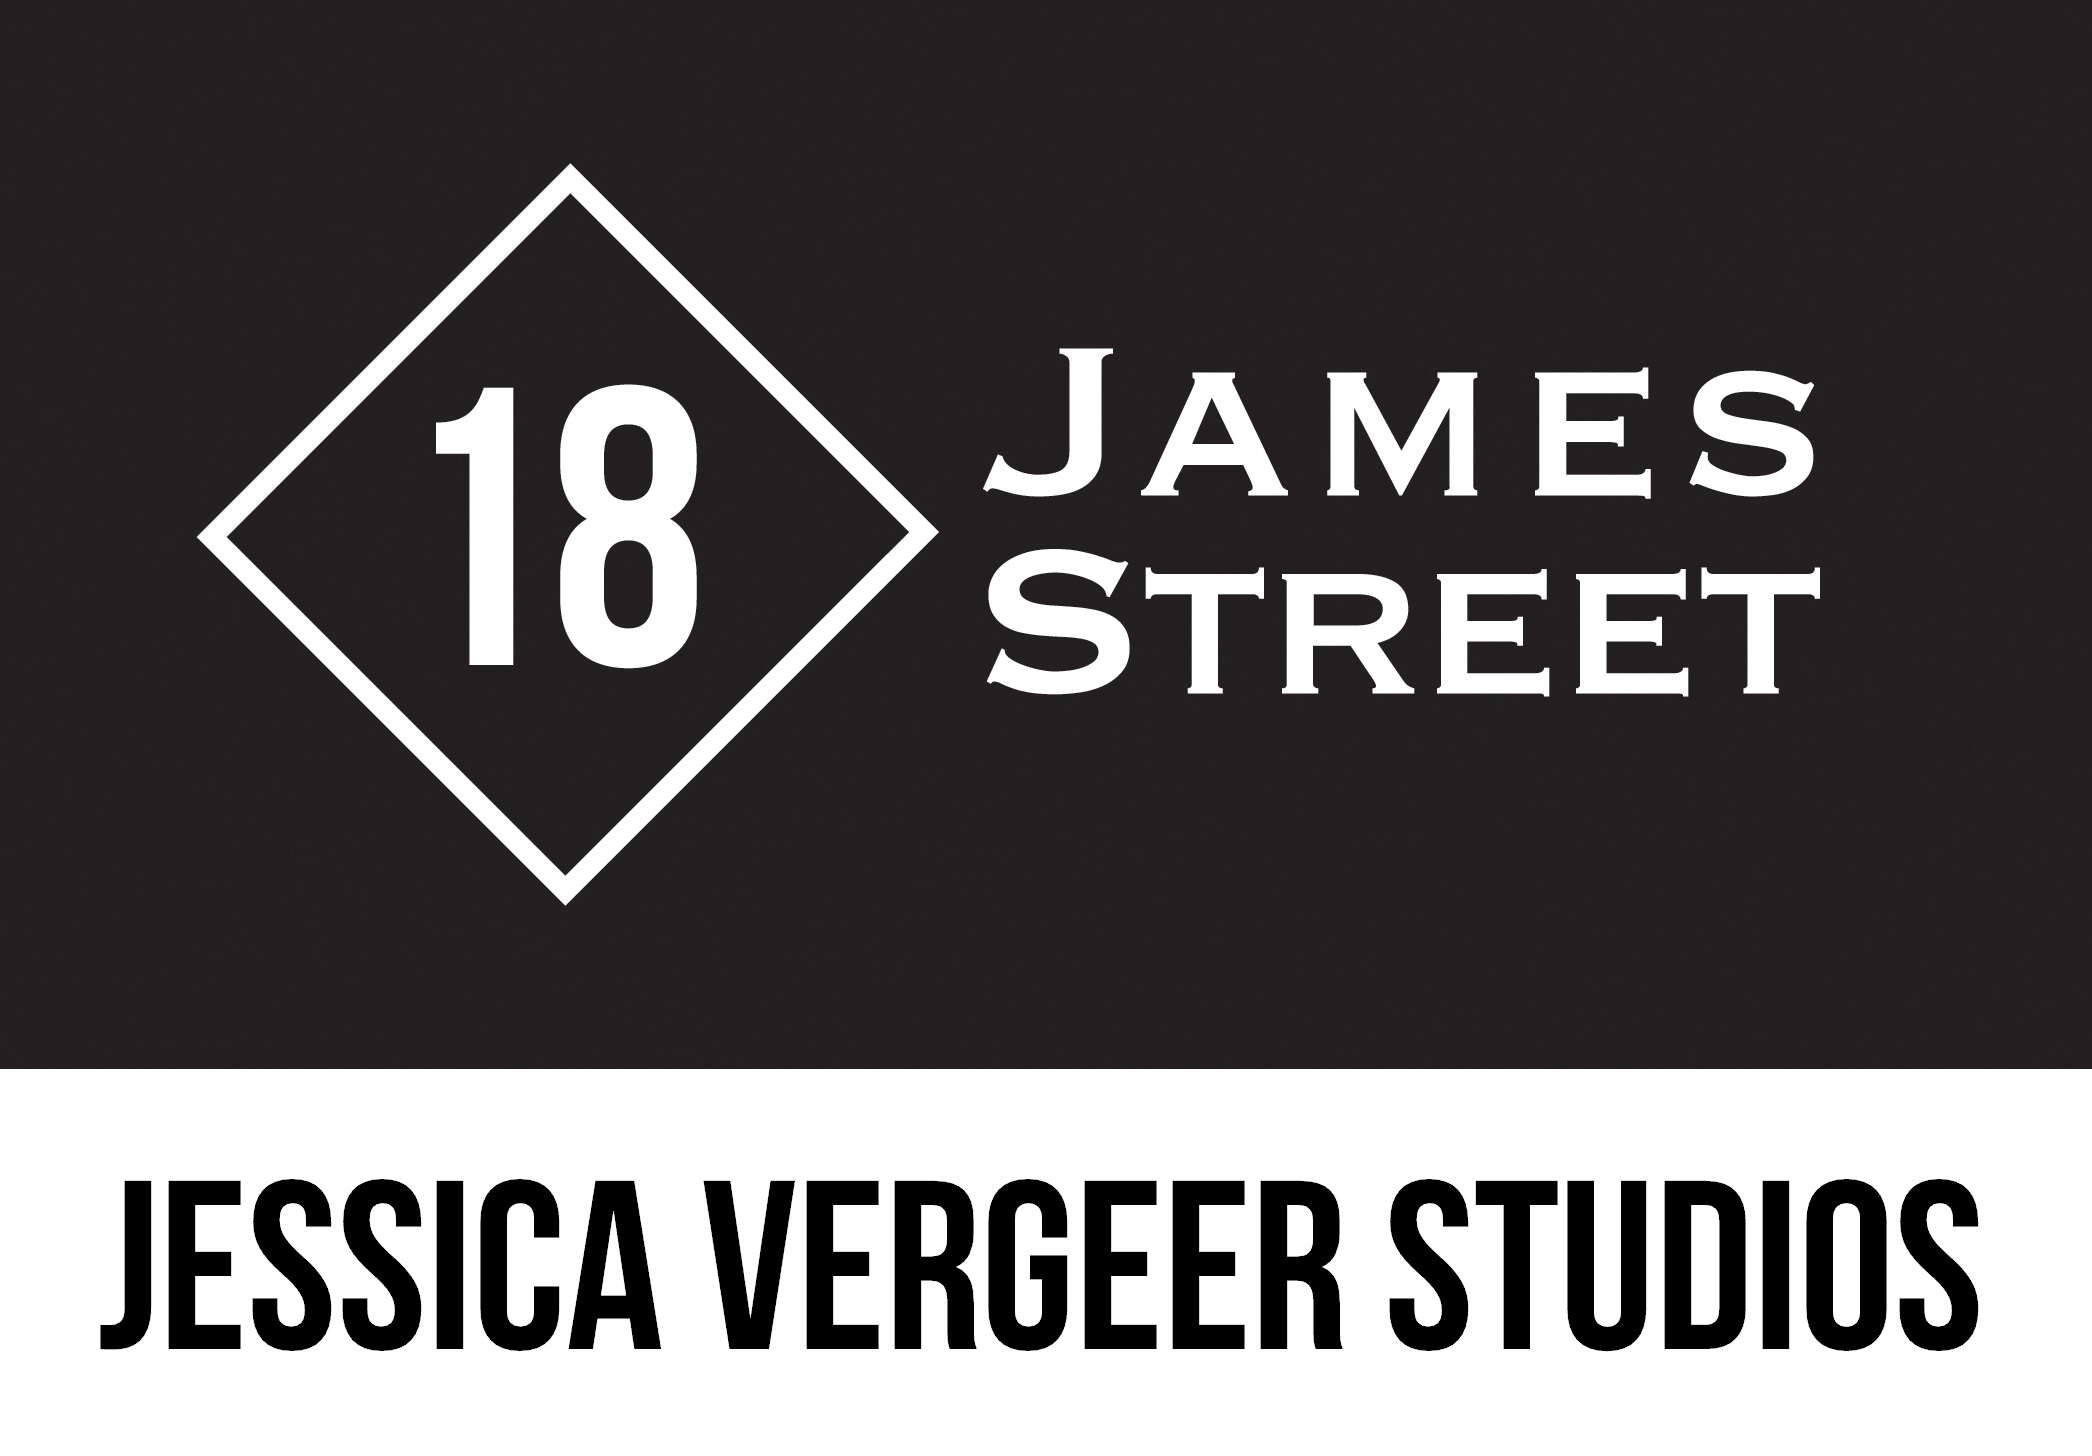 Jessica Vergeer Studios